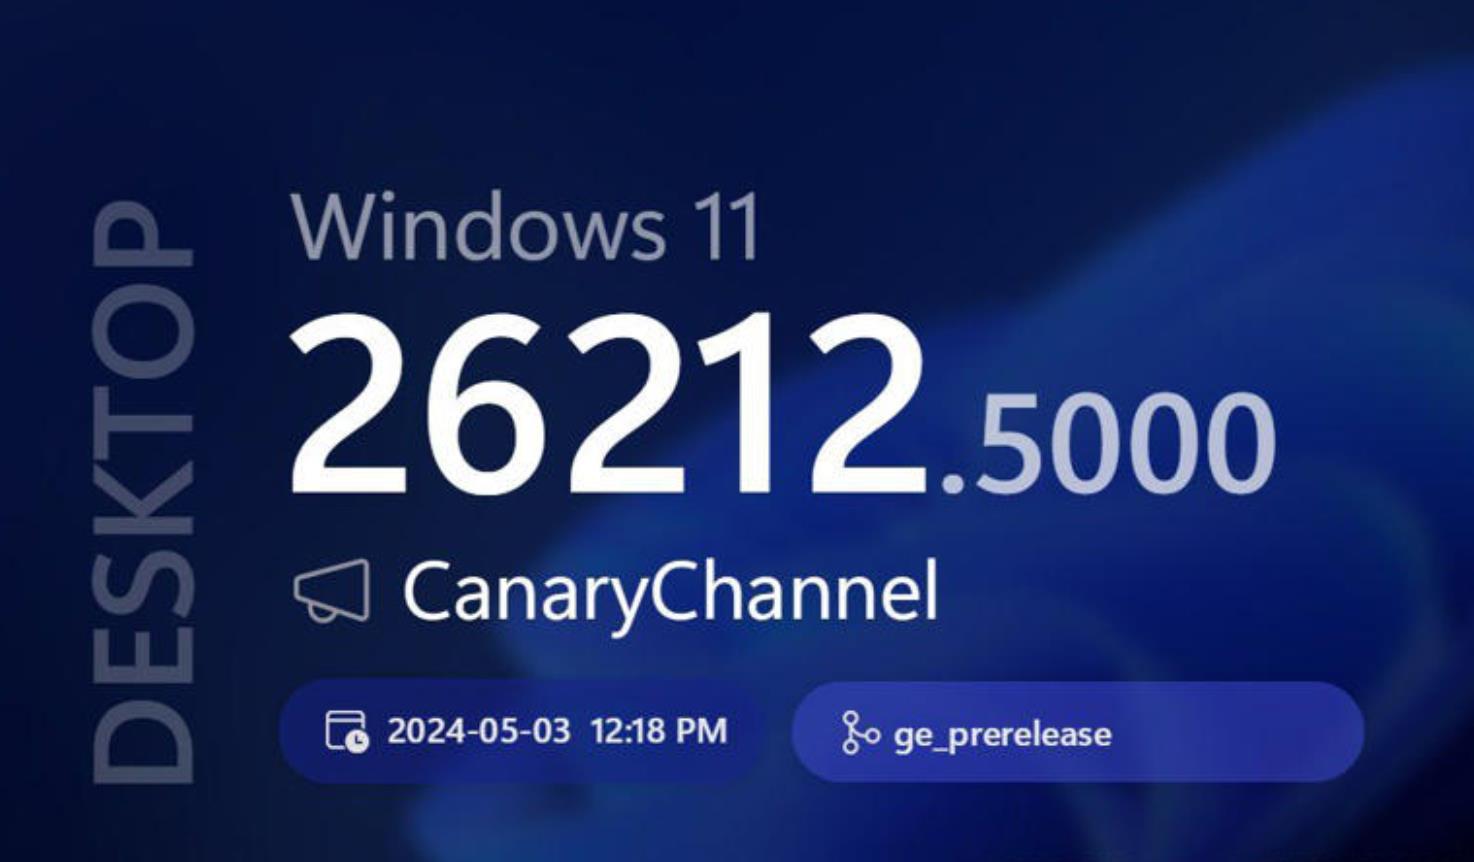 微软Microsoft发布Windows 11 26212 Canary预览版更新，强化分享功能并优化多项系统体验